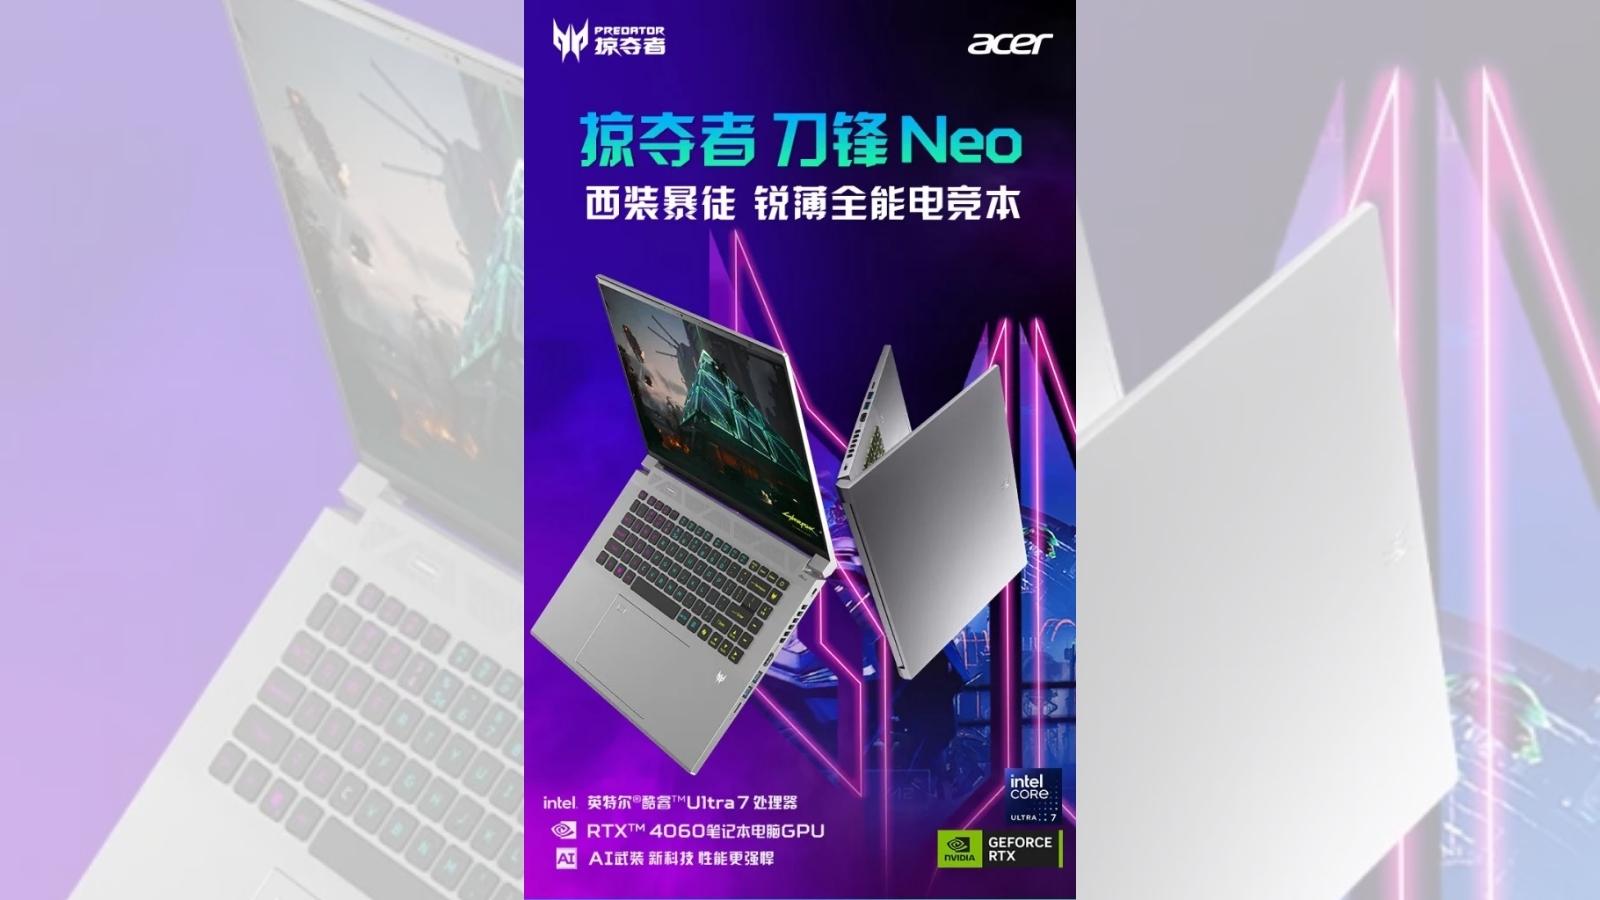 Acer Predator Blade Neo Oyun Bilgisayarı Tanıtıldı